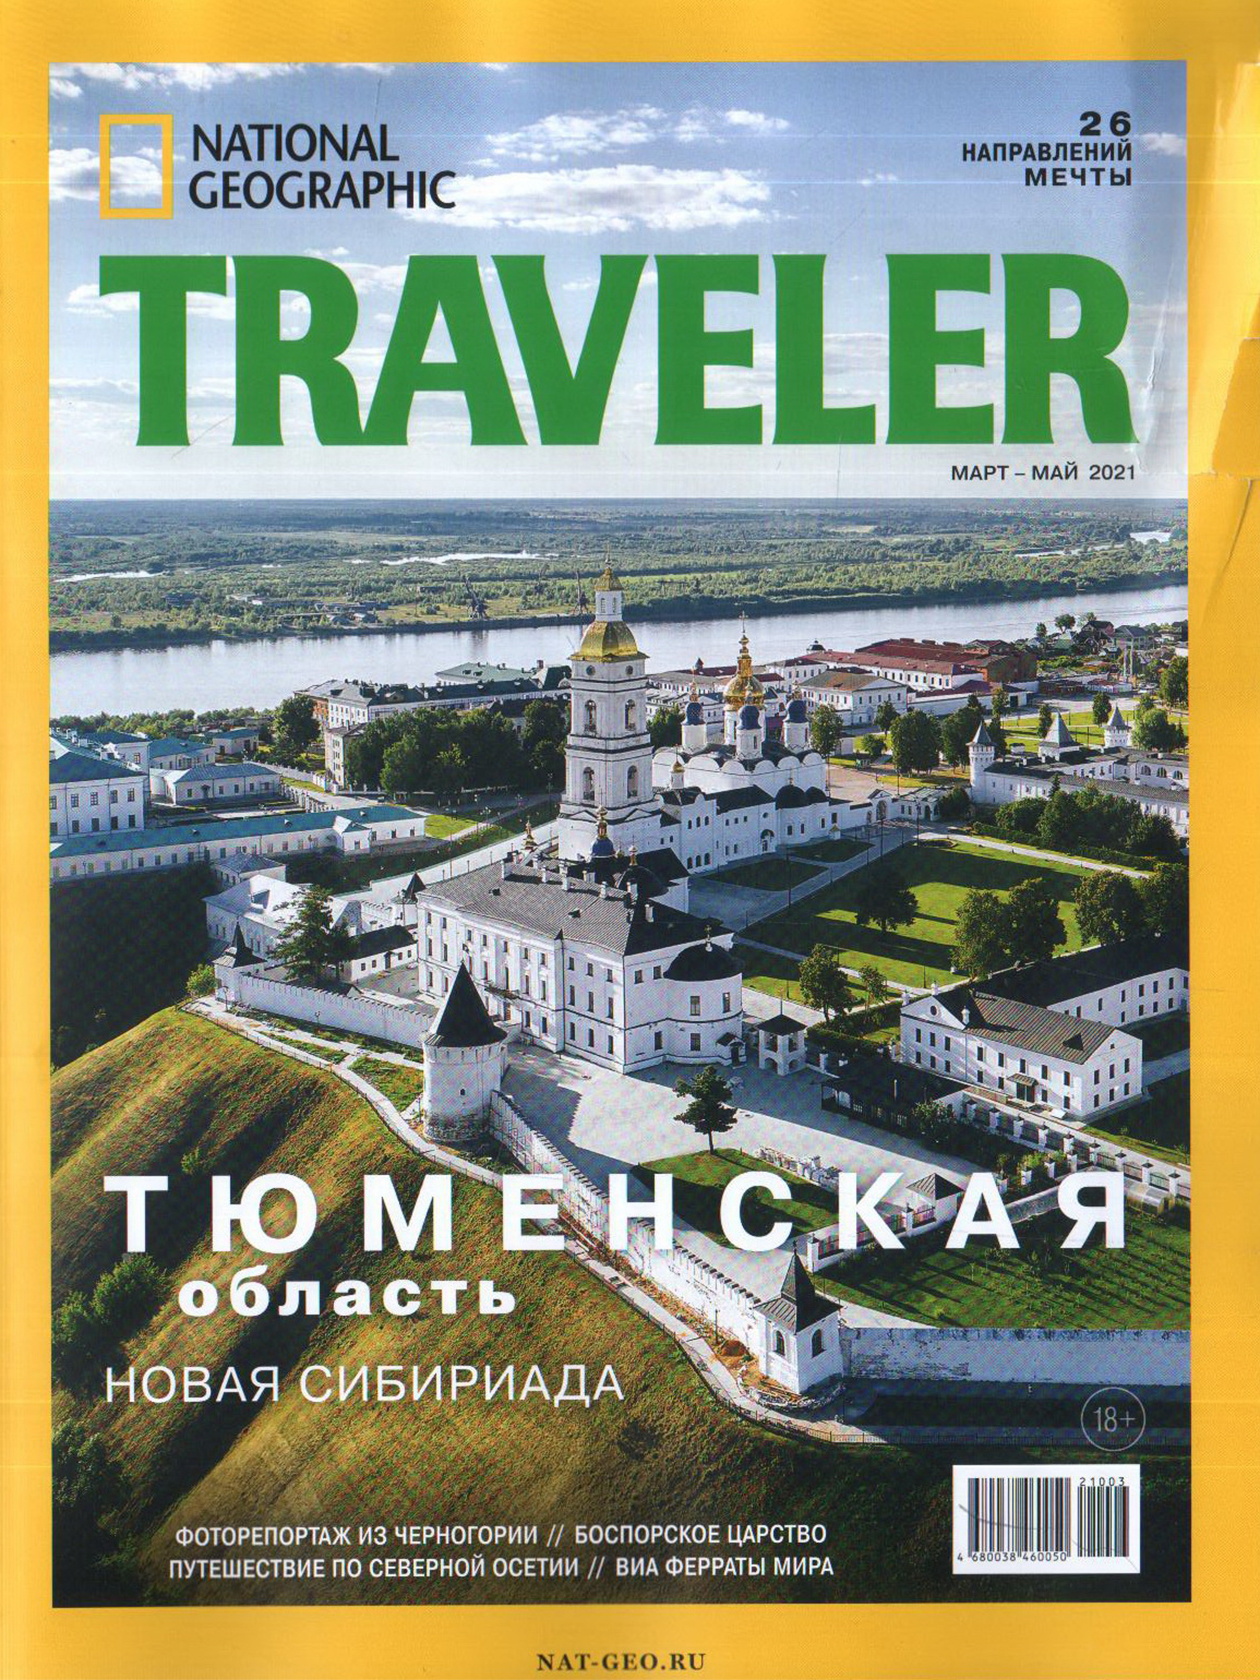 В марте 2021 года Тобольский кремль попал на обложку журнала National Geographic Traveler. Источник: moscowbooks.ru